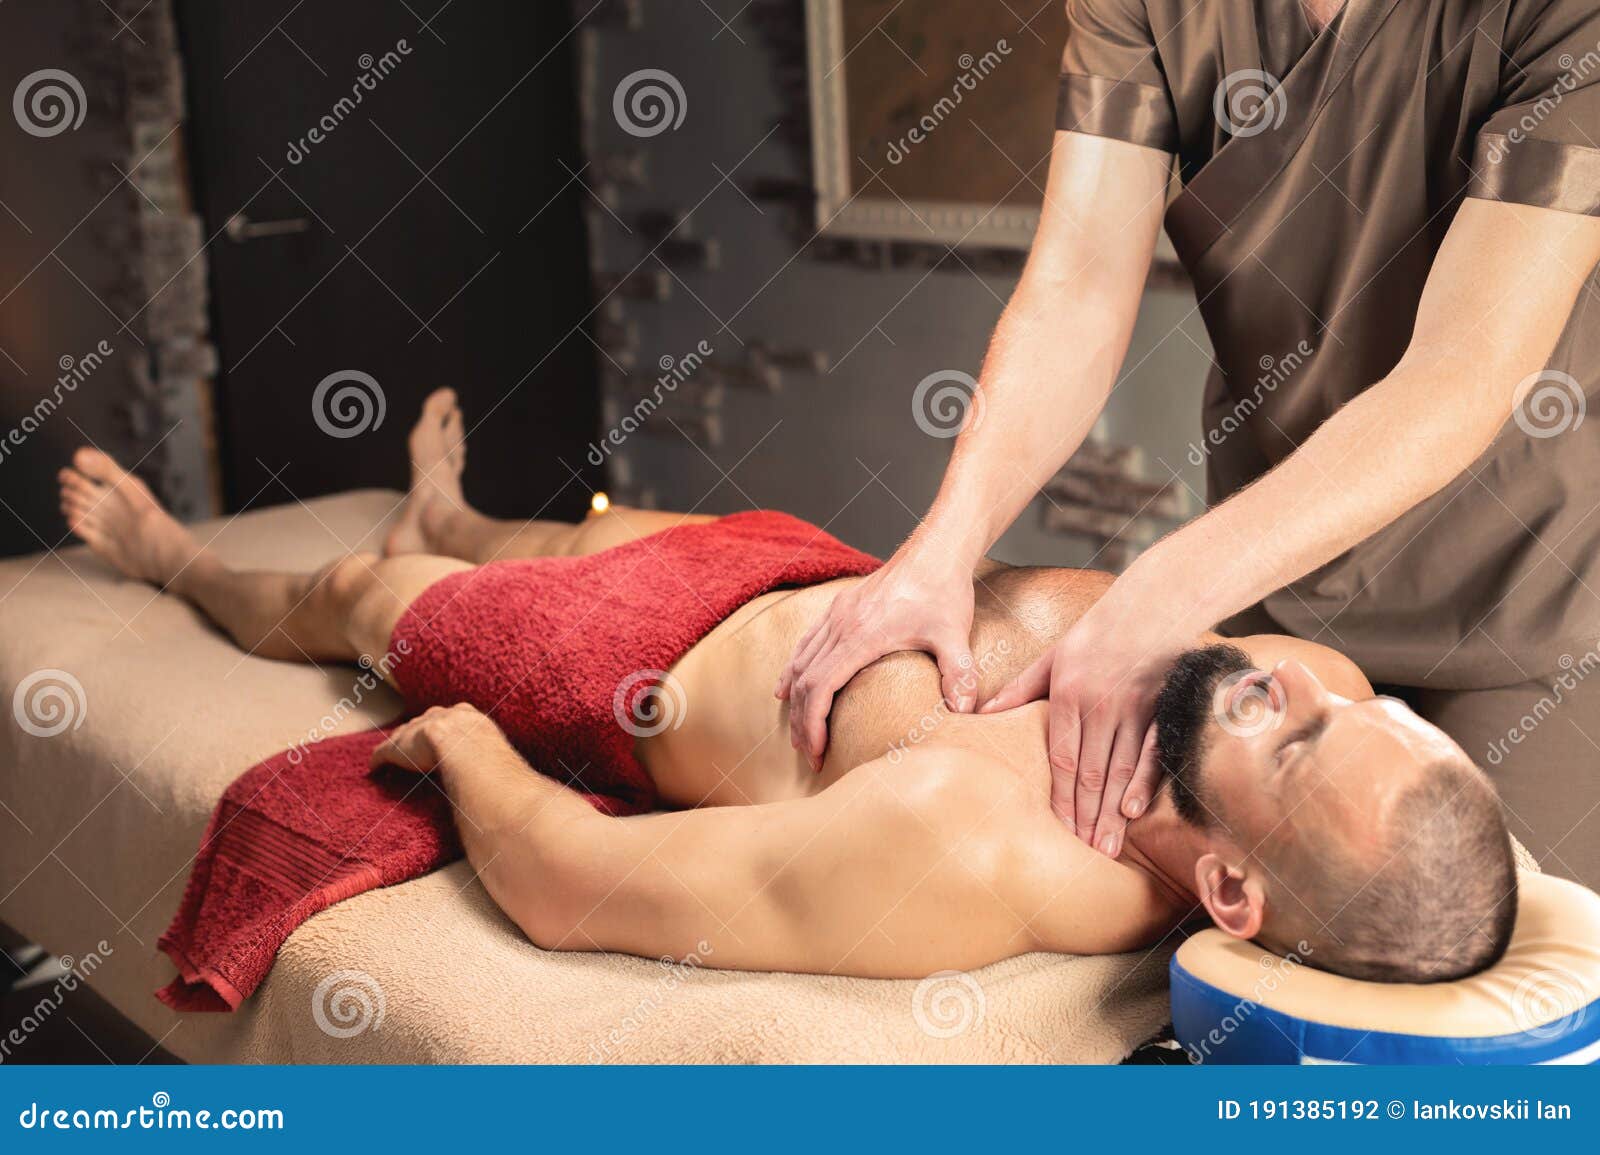 Yoni massage mann